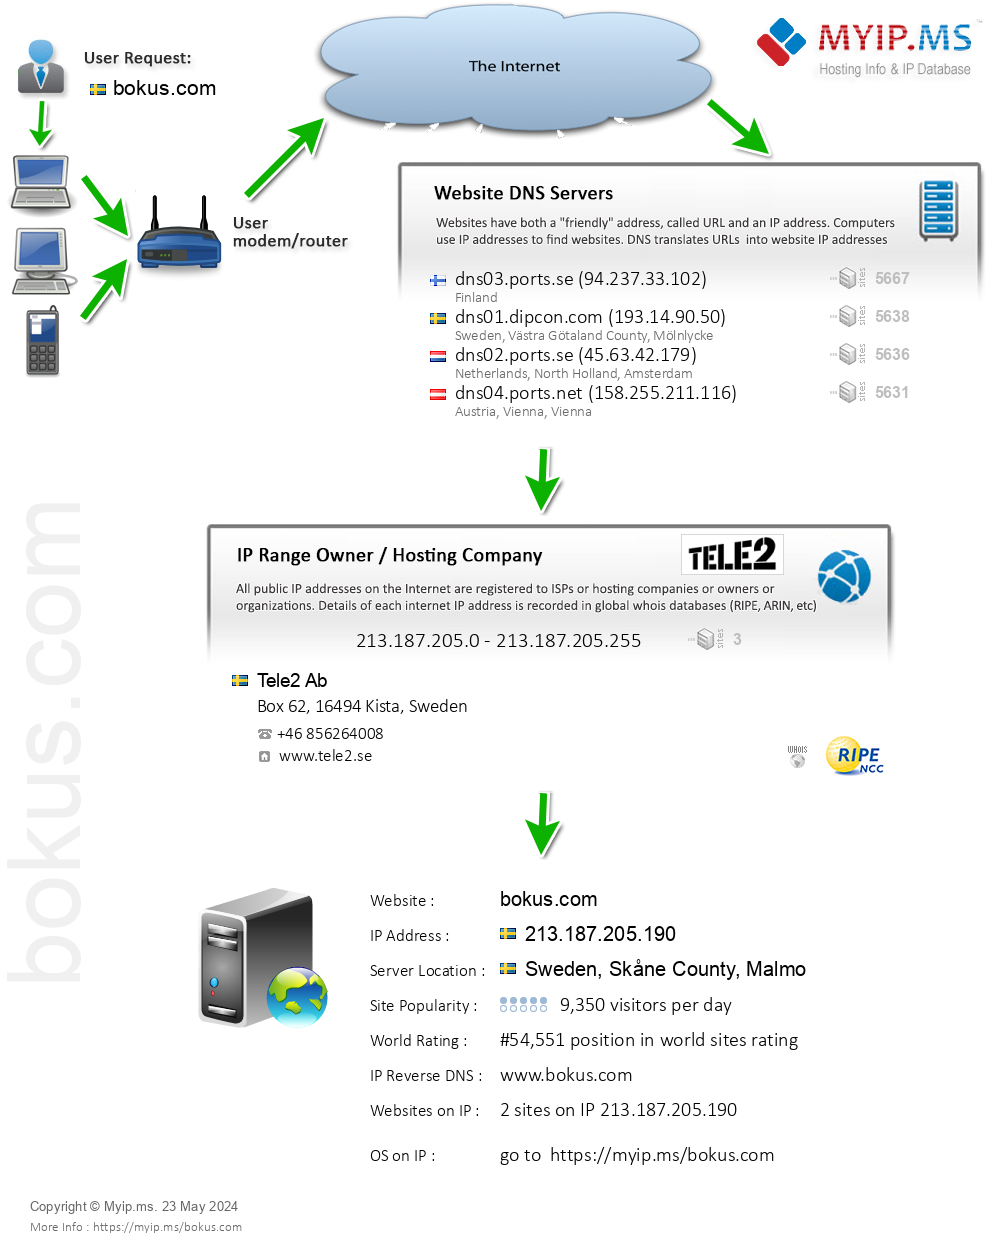 Bokus.com - Website Hosting Visual IP Diagram